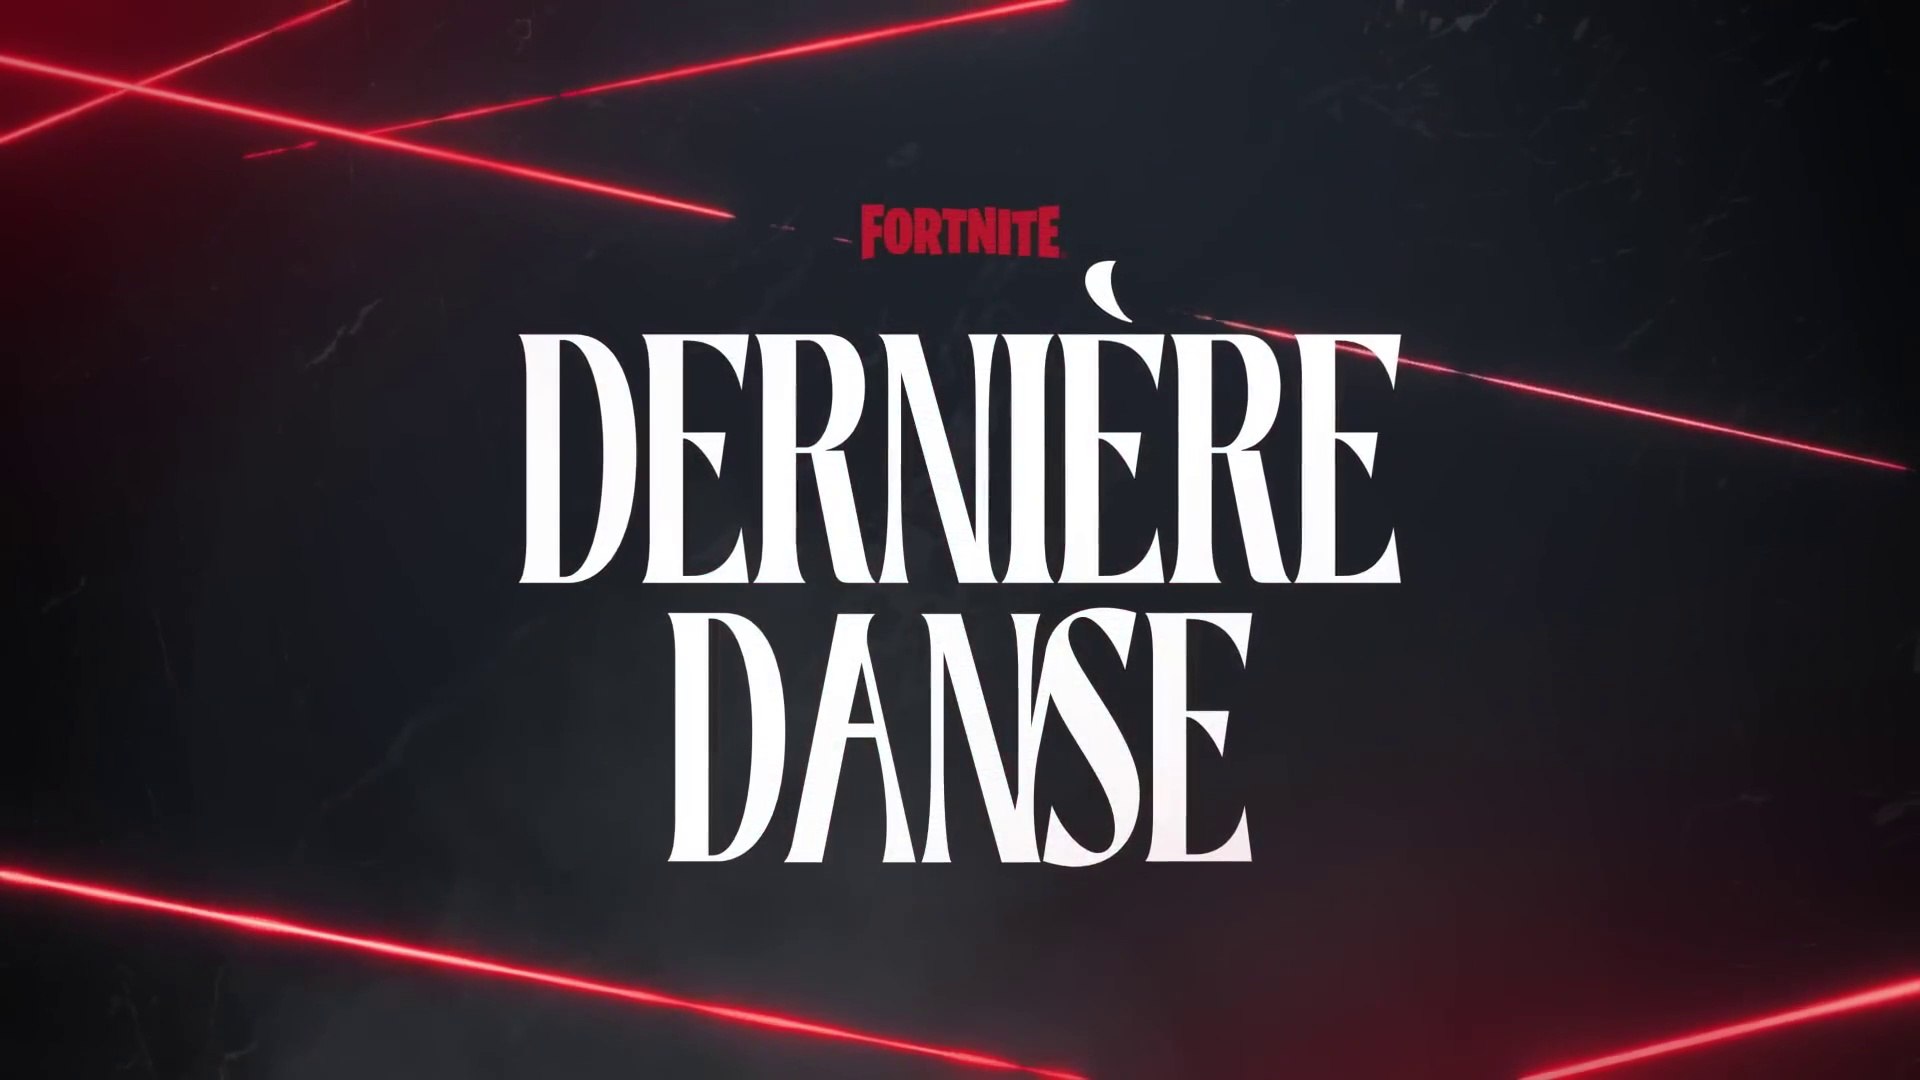 Bande-annonce de lancement de Fortnite Chapitre 4 - Saison 4 "Dernière danse"  - Vidéo Dailymotion